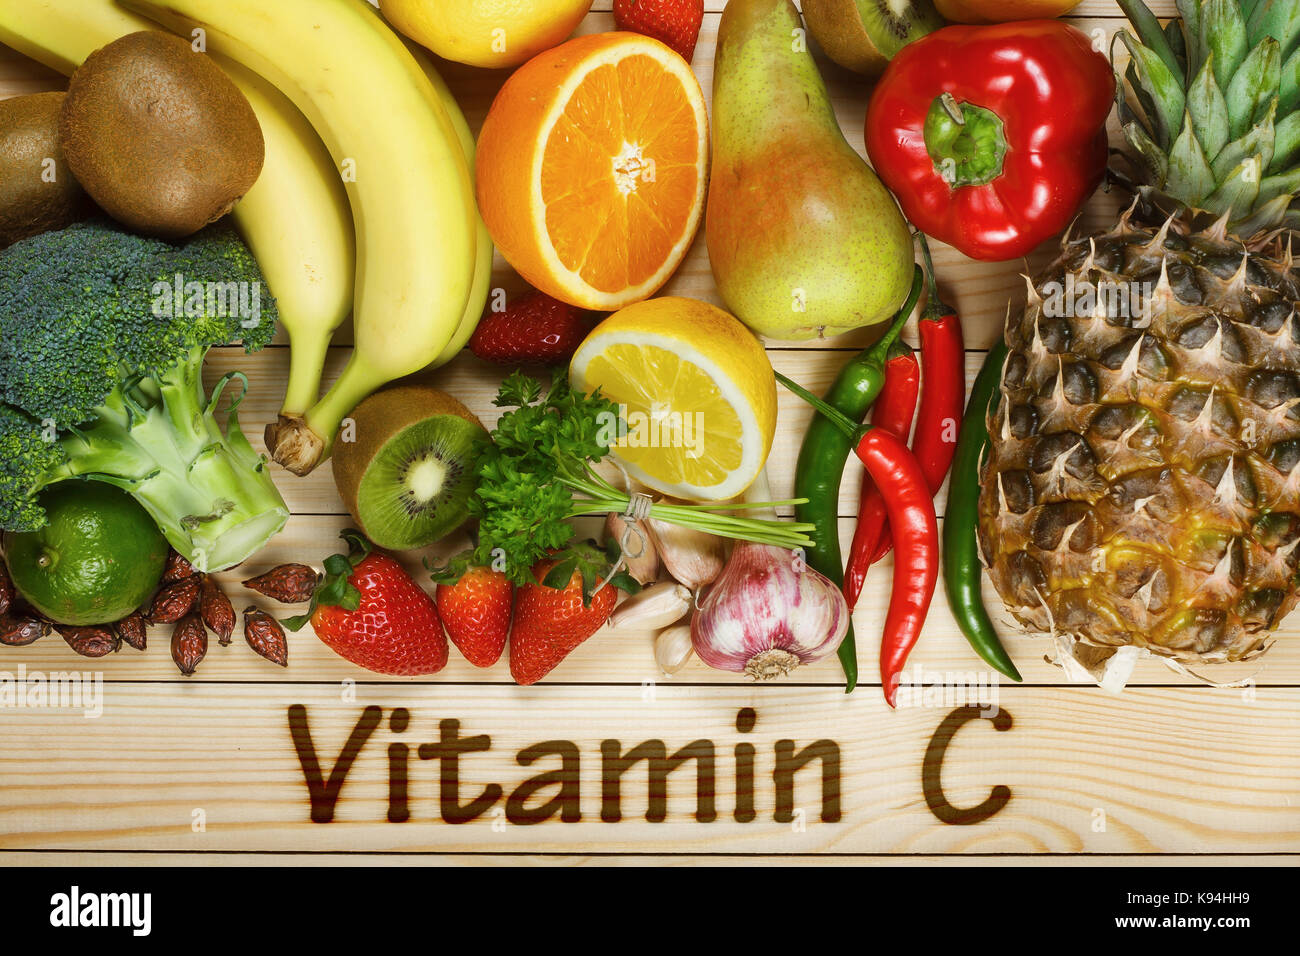 La vitamina C en frutas y verduras y productos naturales ricos en vitamina C, como naranjas, limones, frutos secos, Rose, la pimienta roja, kiwi, hojas de perejil, ajo Foto de stock